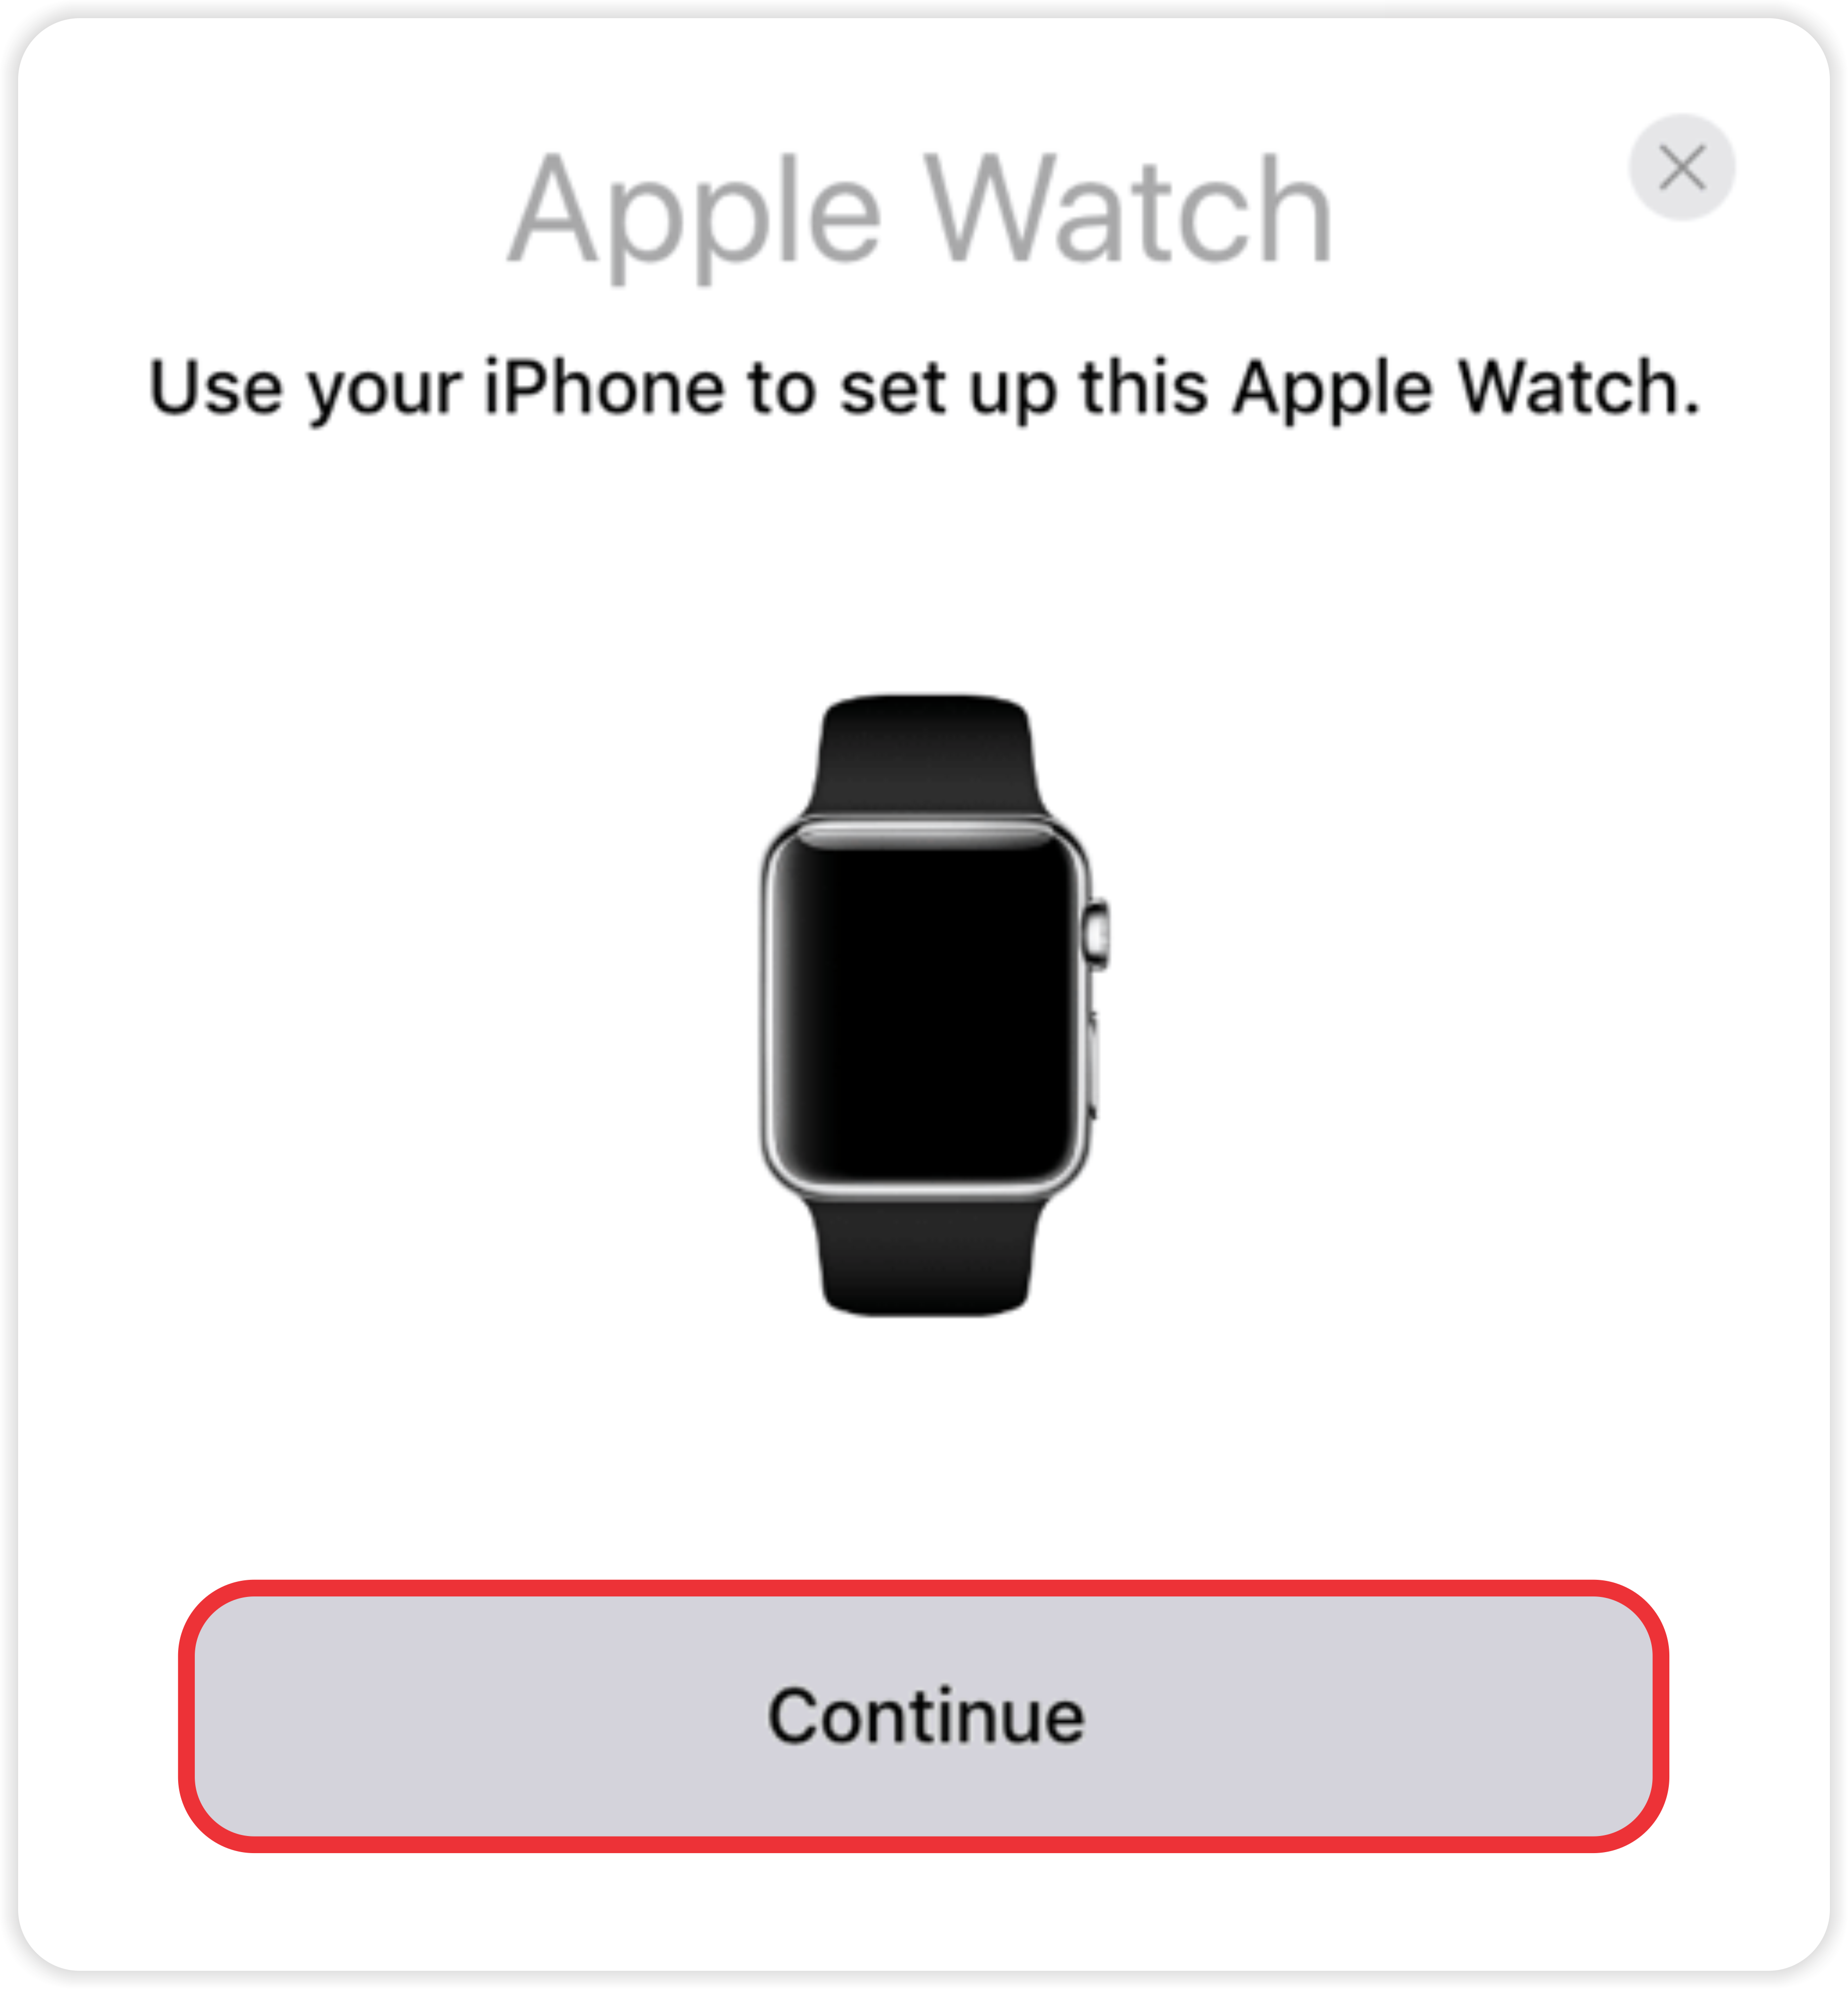 Как подключить samsung watch к iphone. Как подключить Apple watch к iphone. Привязка Эппл вотч. Синхронизация Эппл вотч с айфоном 11. Как найти эпл вотч с айфона дома.